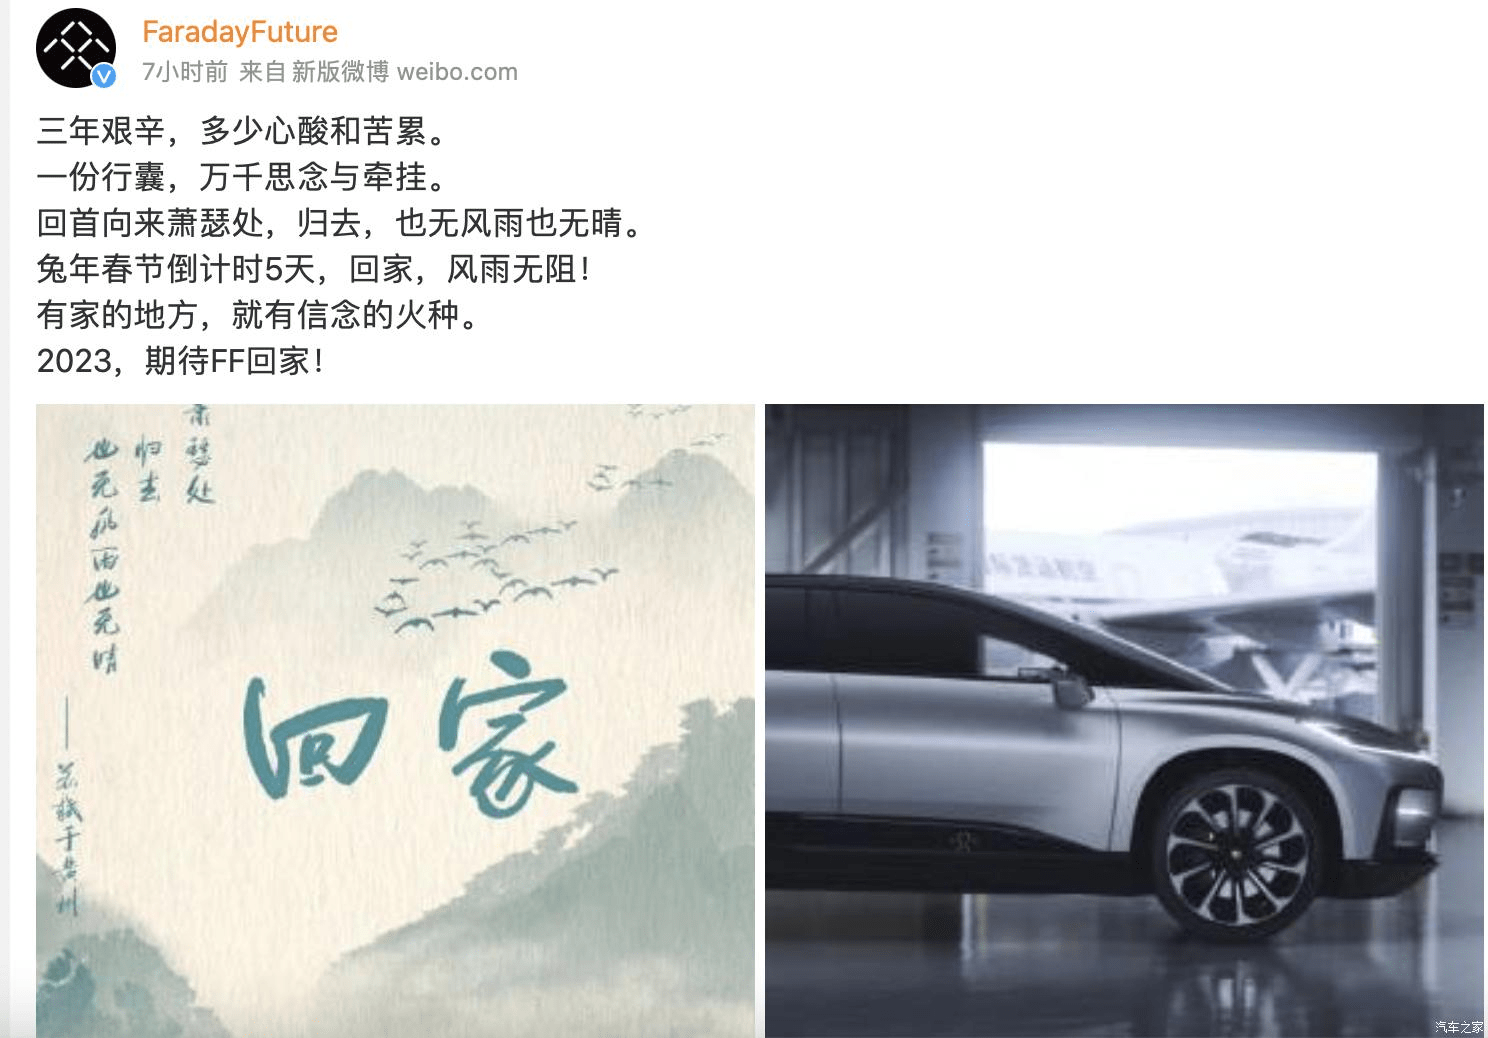 法拉第未来FF宣布与黄冈市合作 3月底正式开始量产FF91Futurist电动车